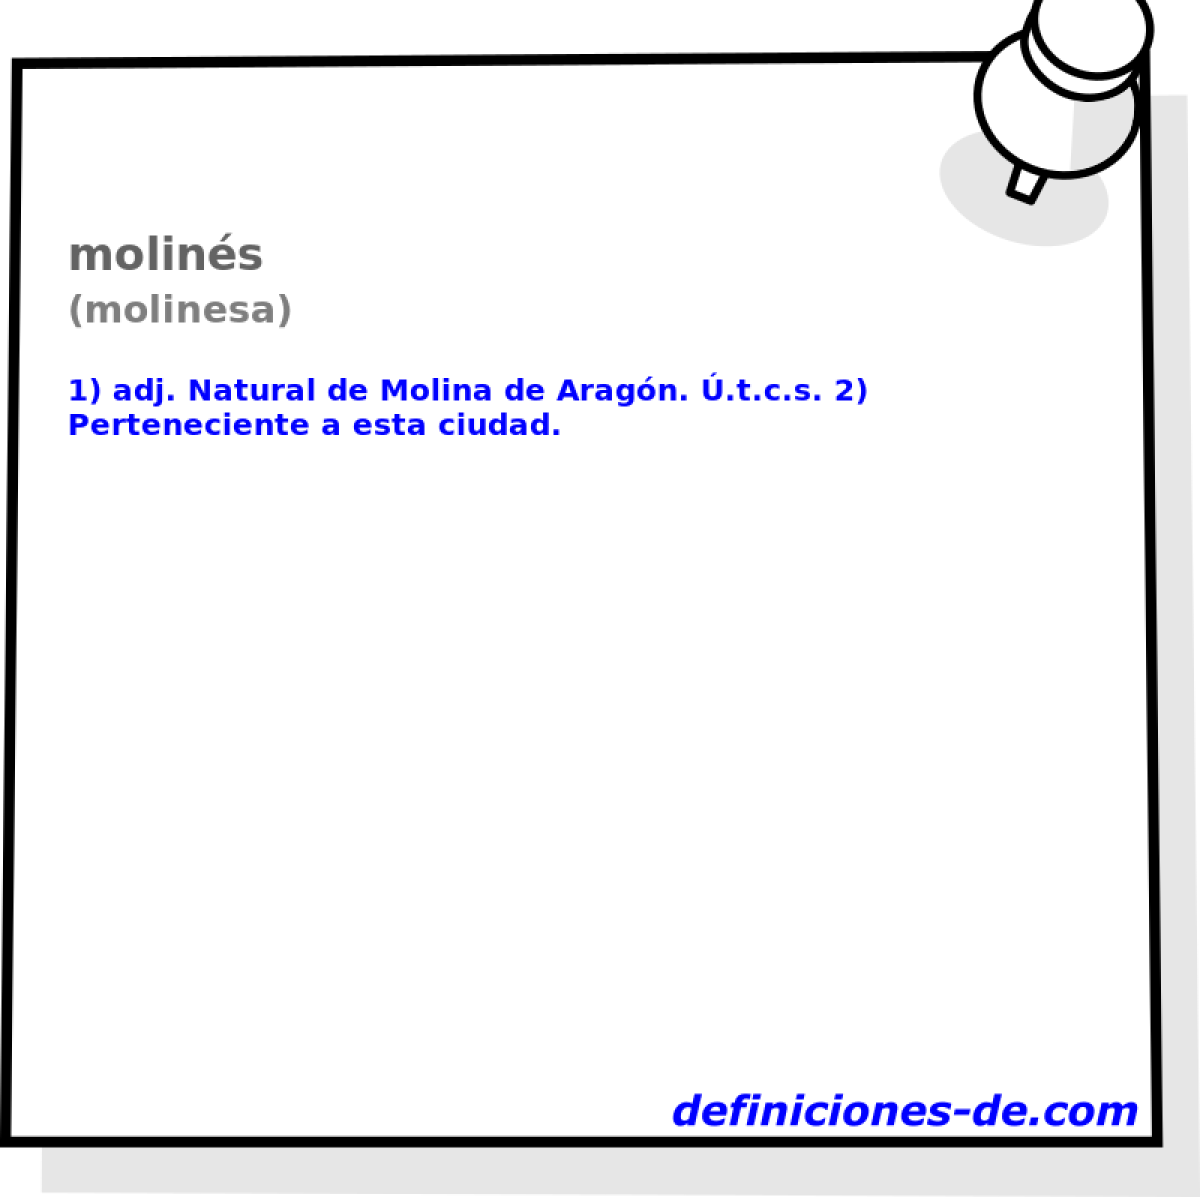 molins (molinesa)